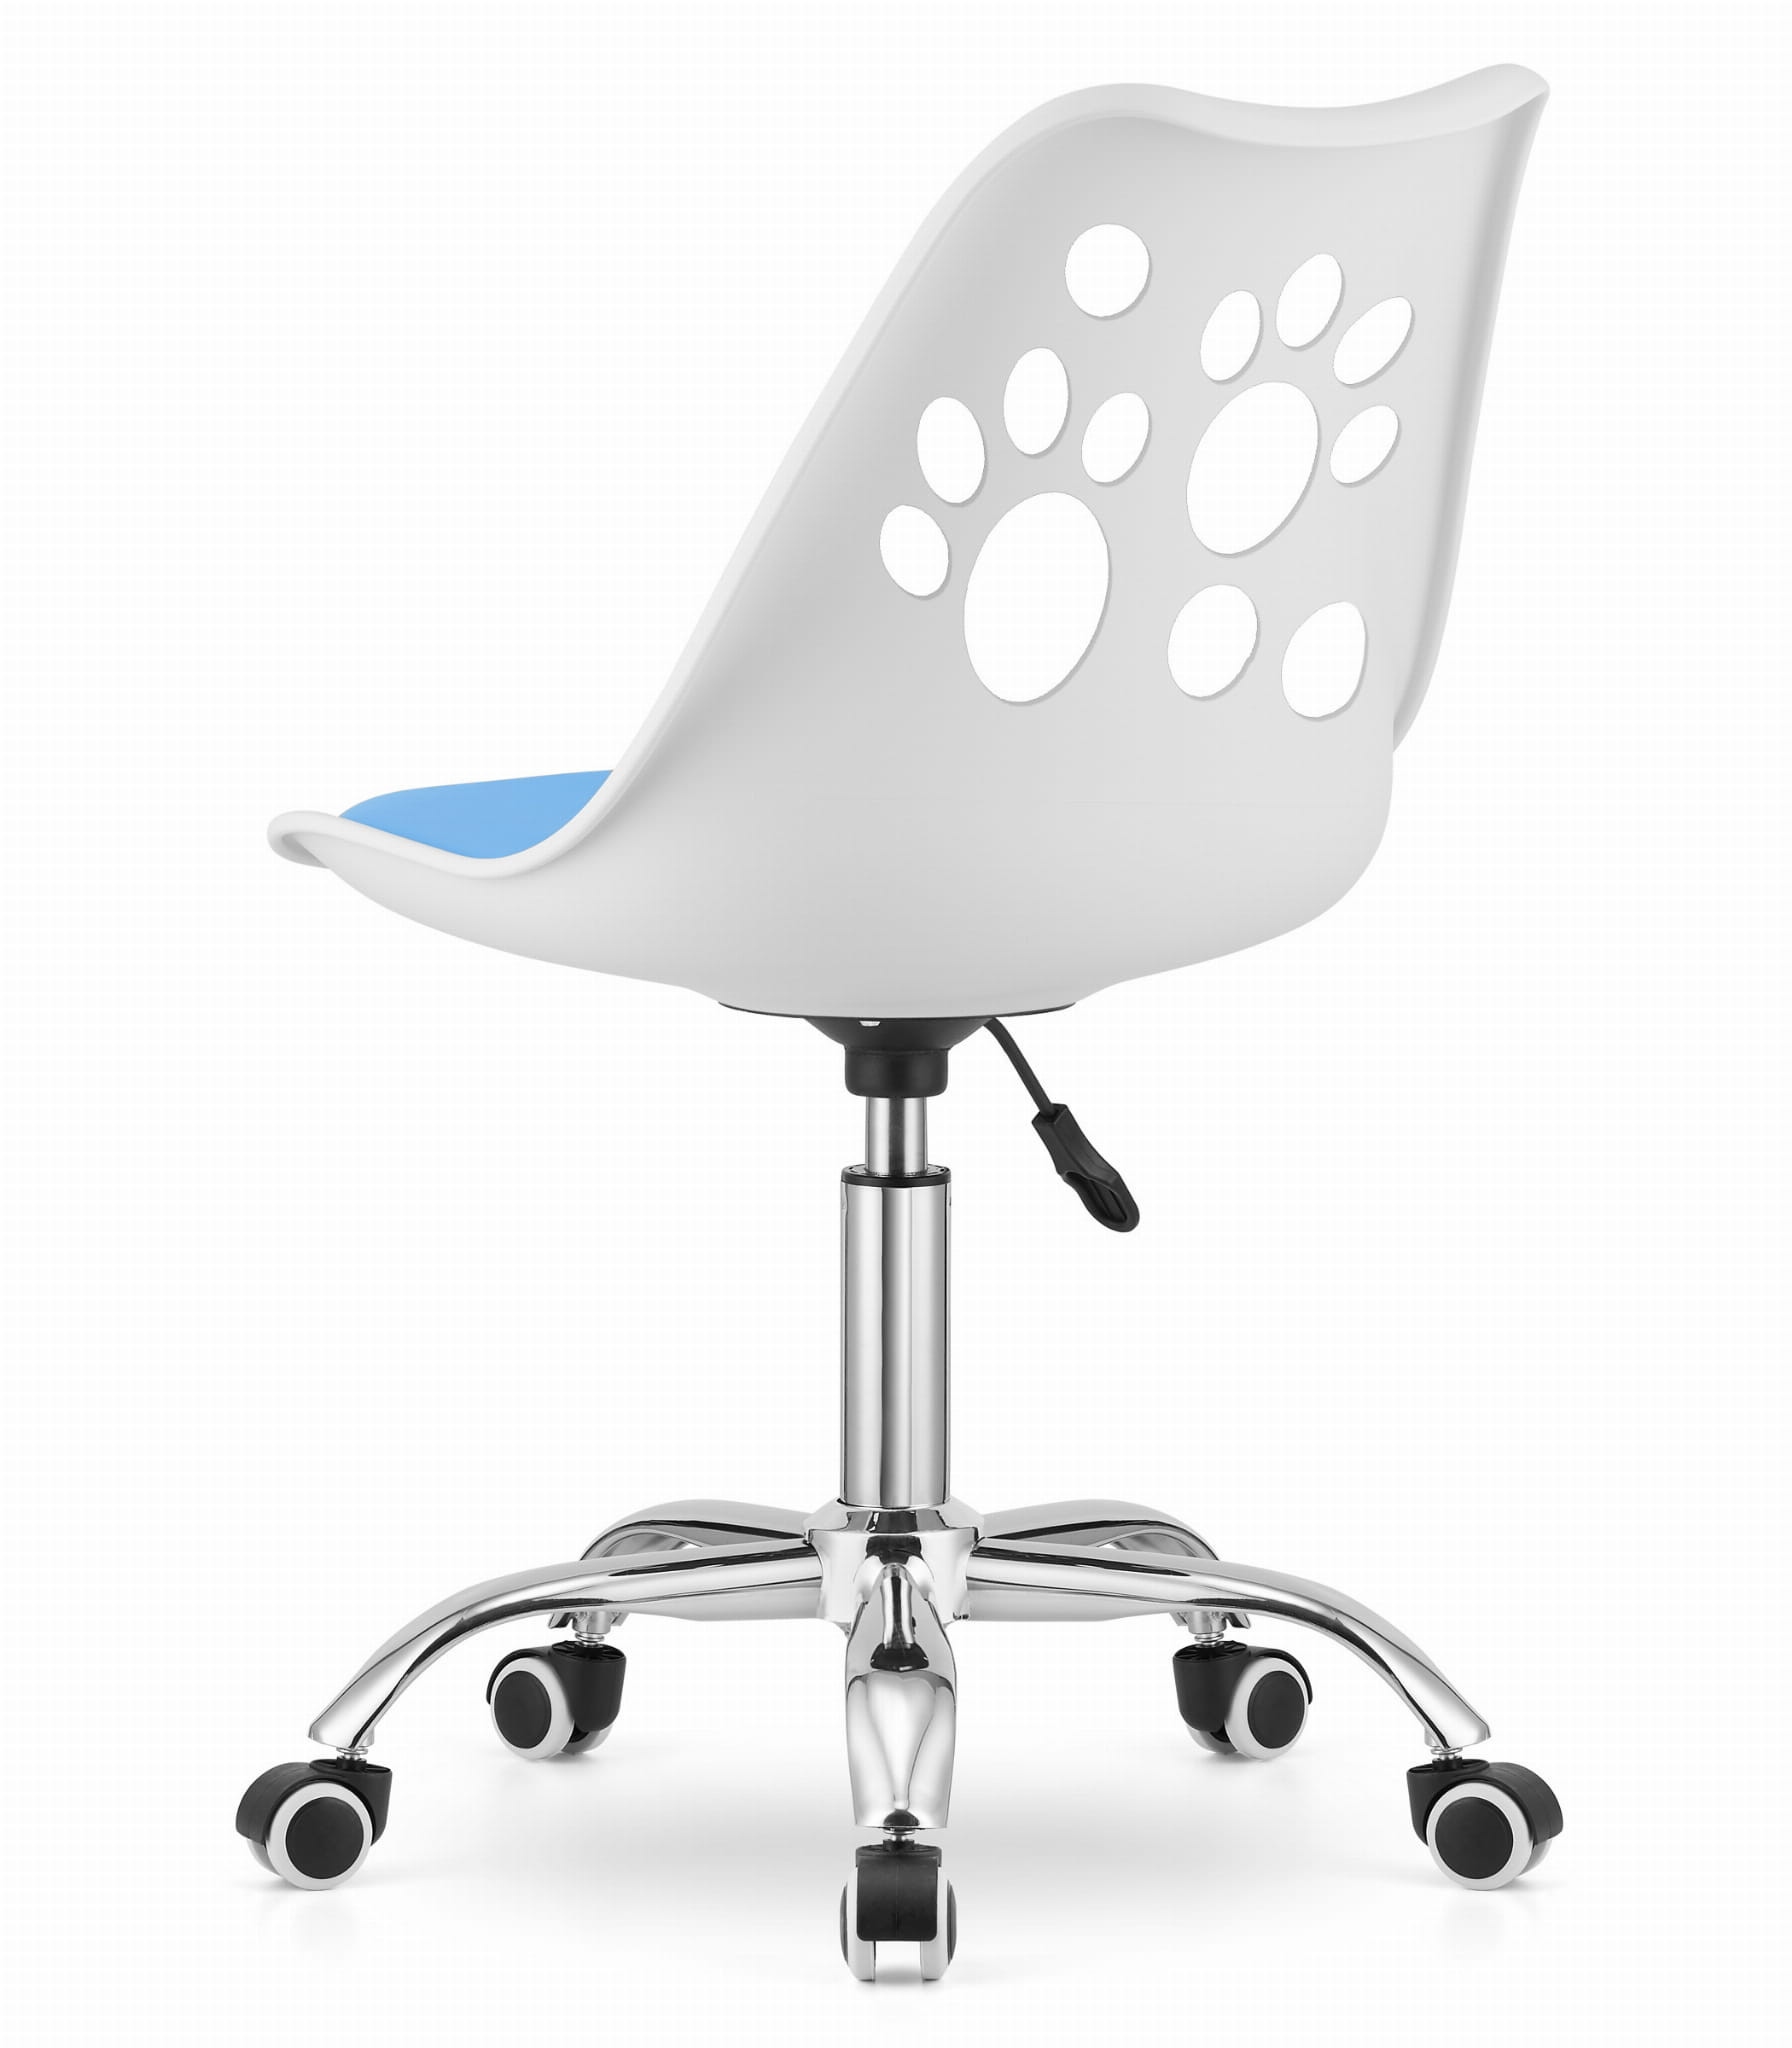 Otočná stolička PRINT - bielo/modrá